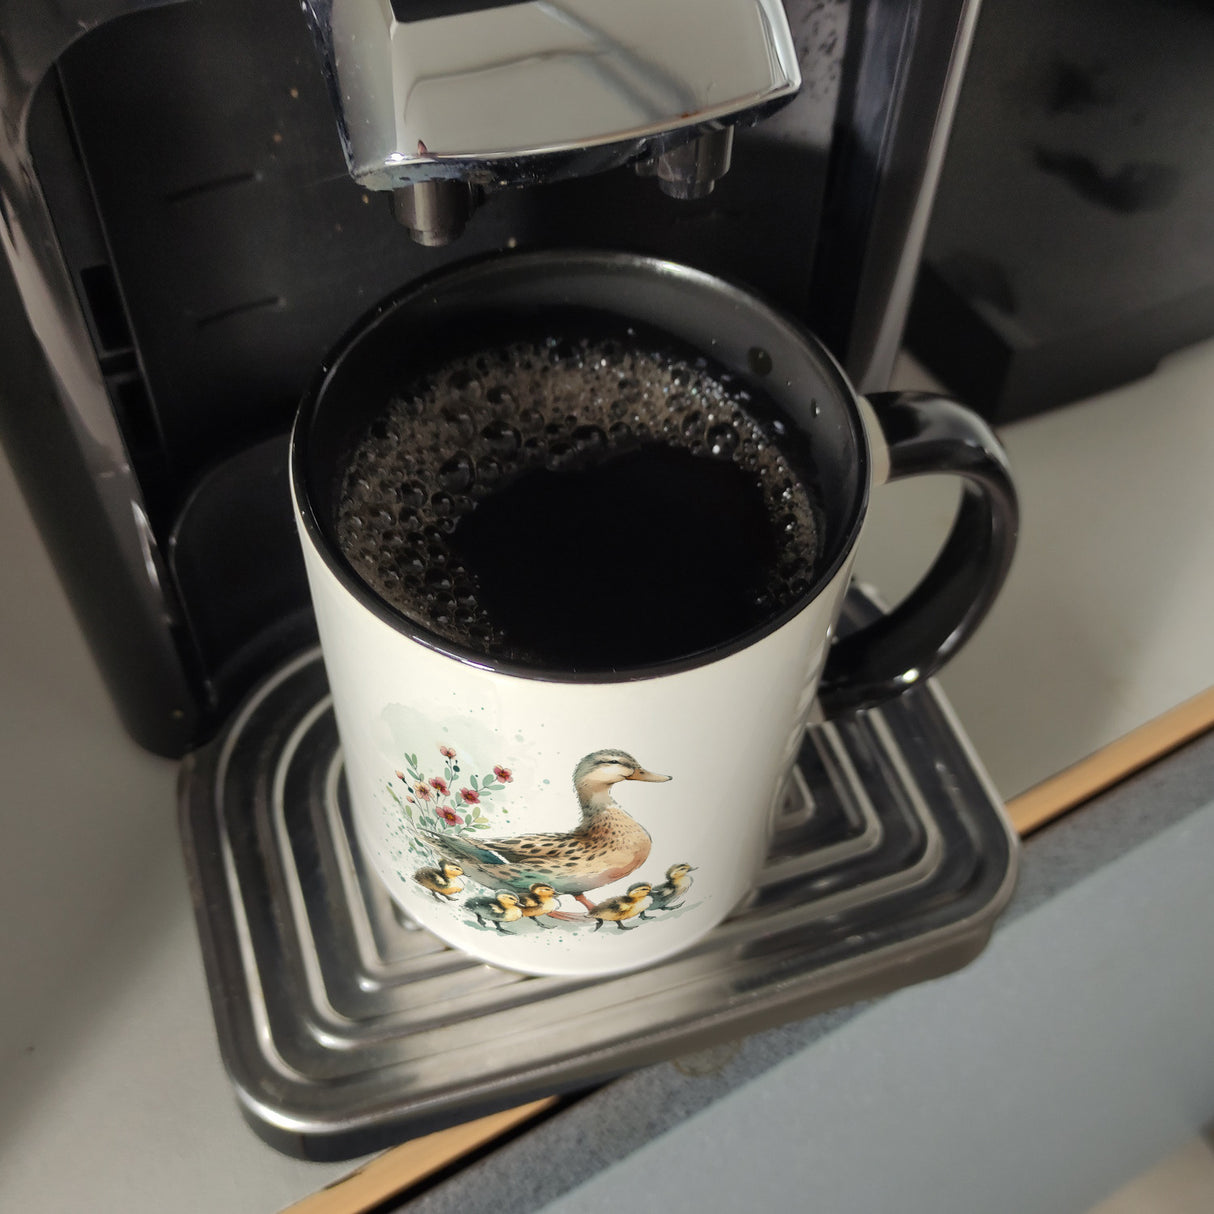 Ente mit Küken Kaffeebecher